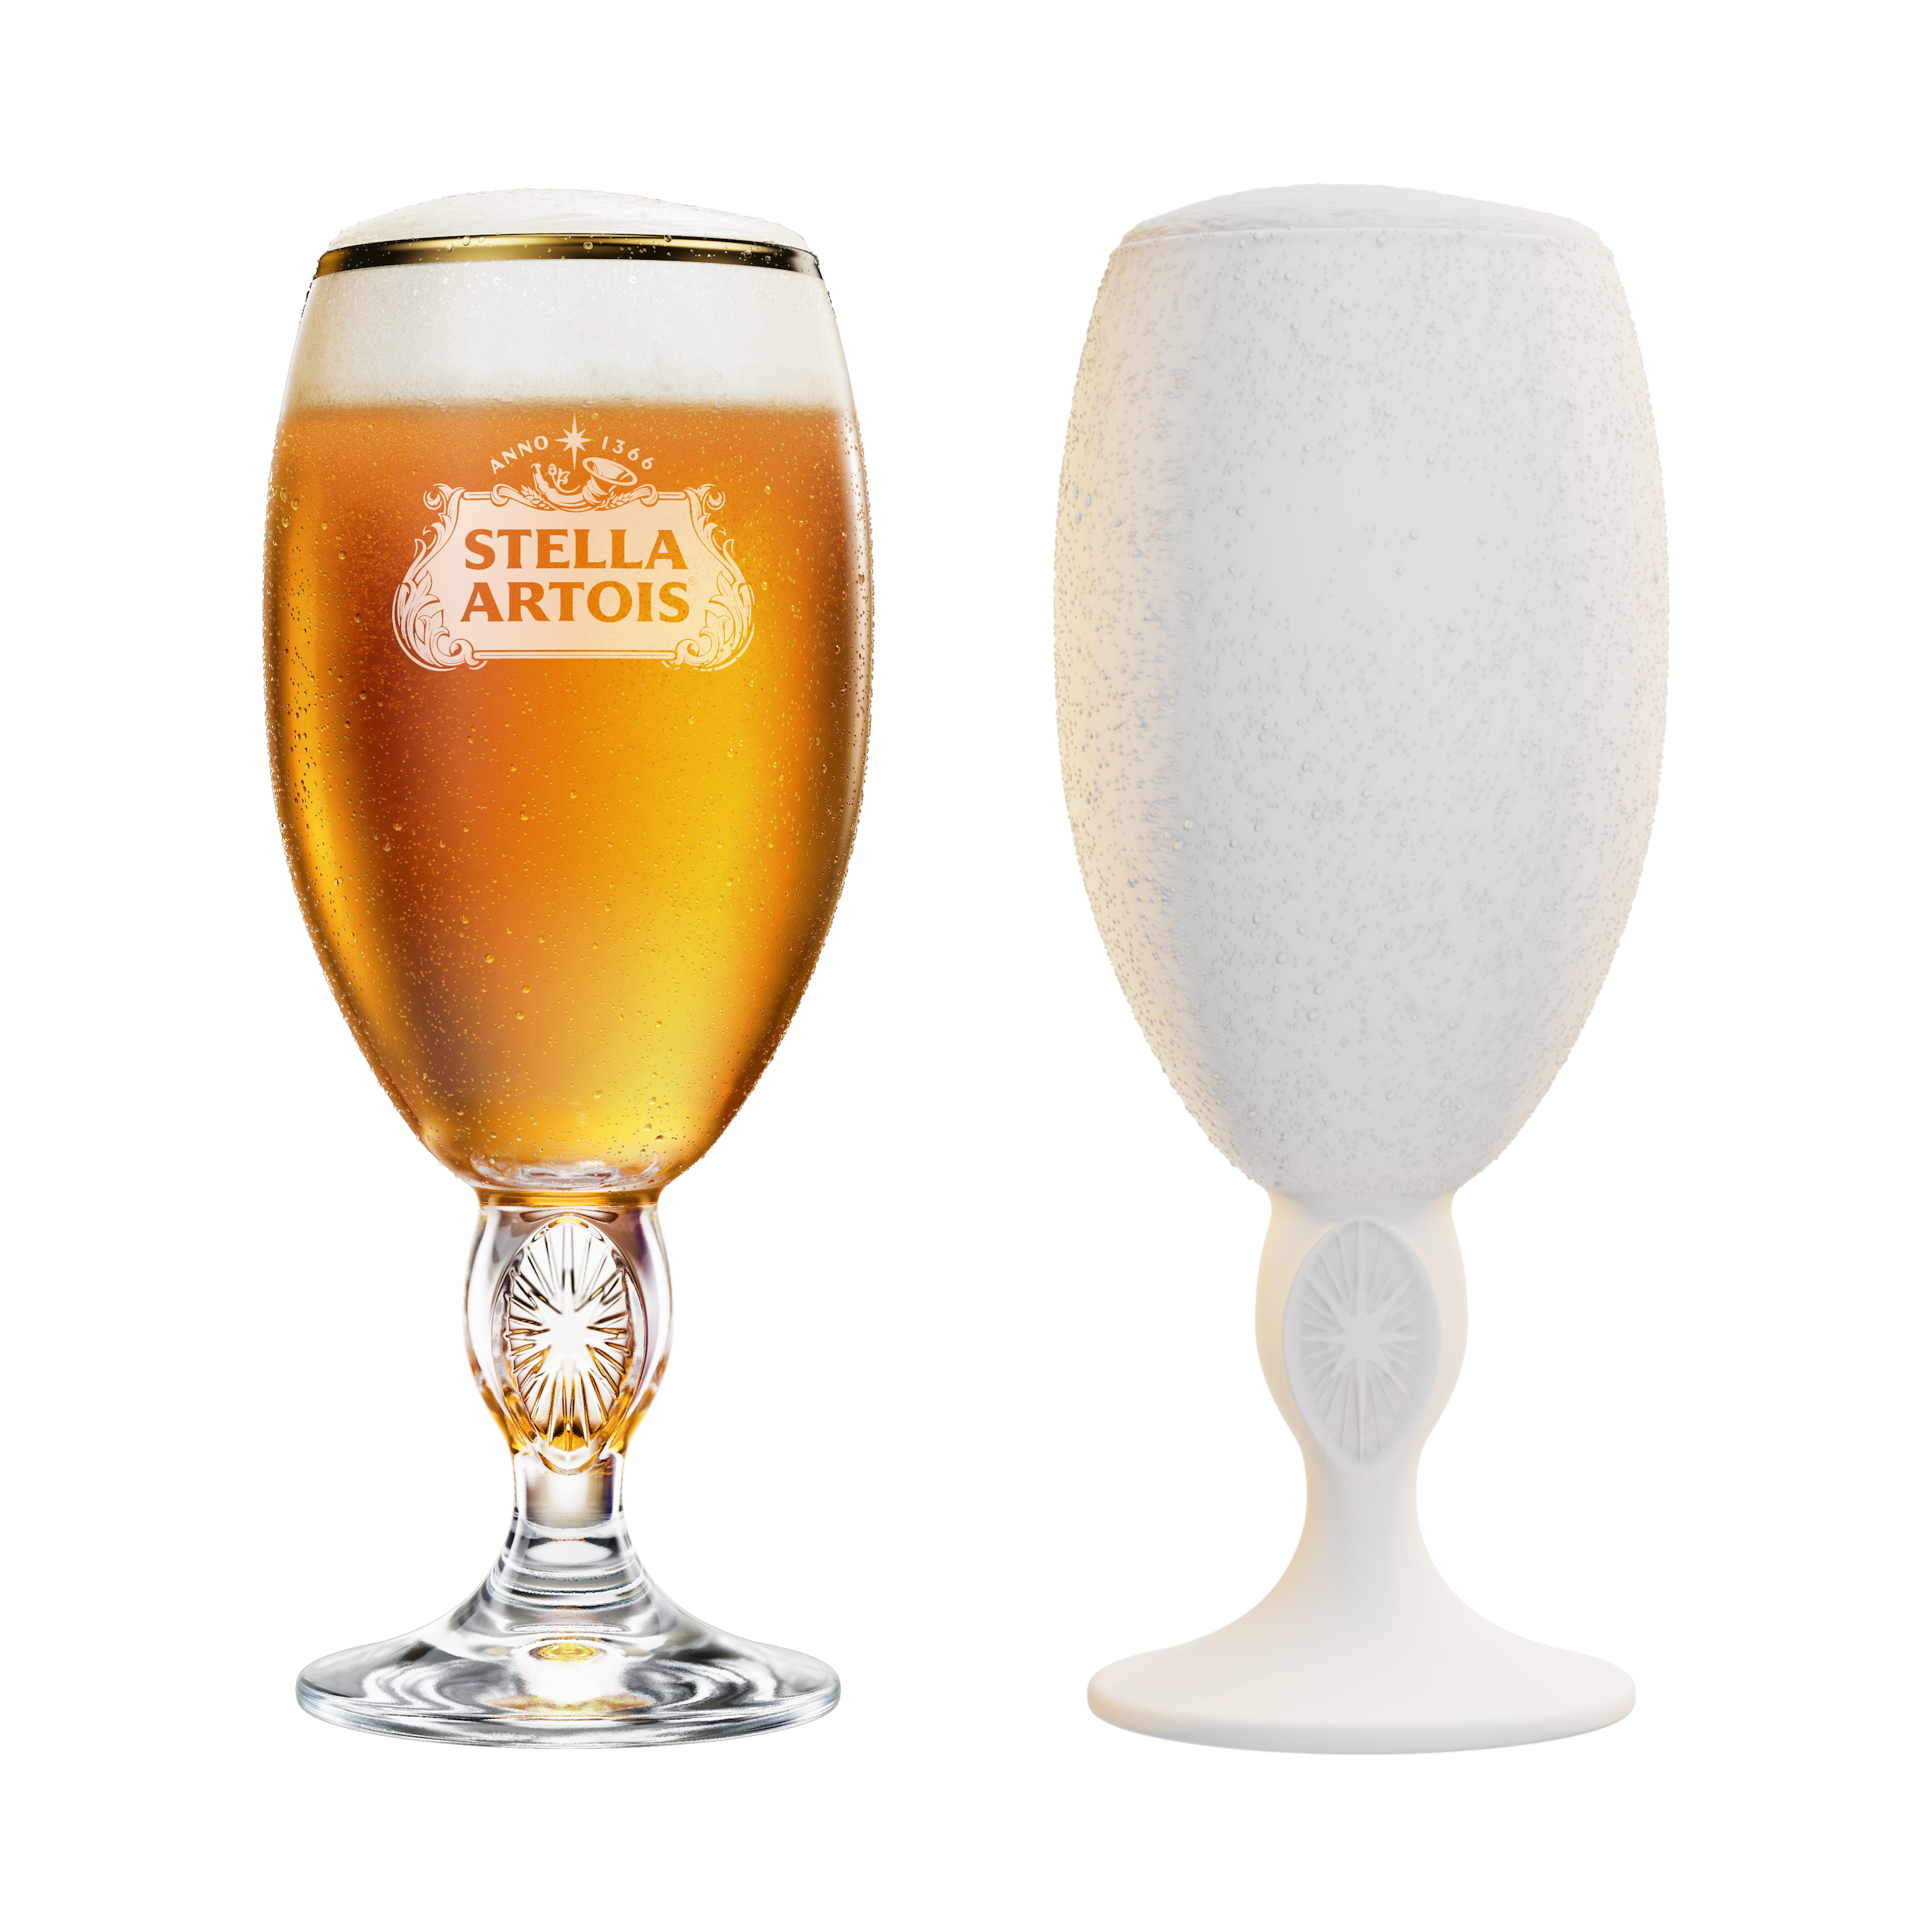 KeyShot rendering of Stella Artois beer in a glass.